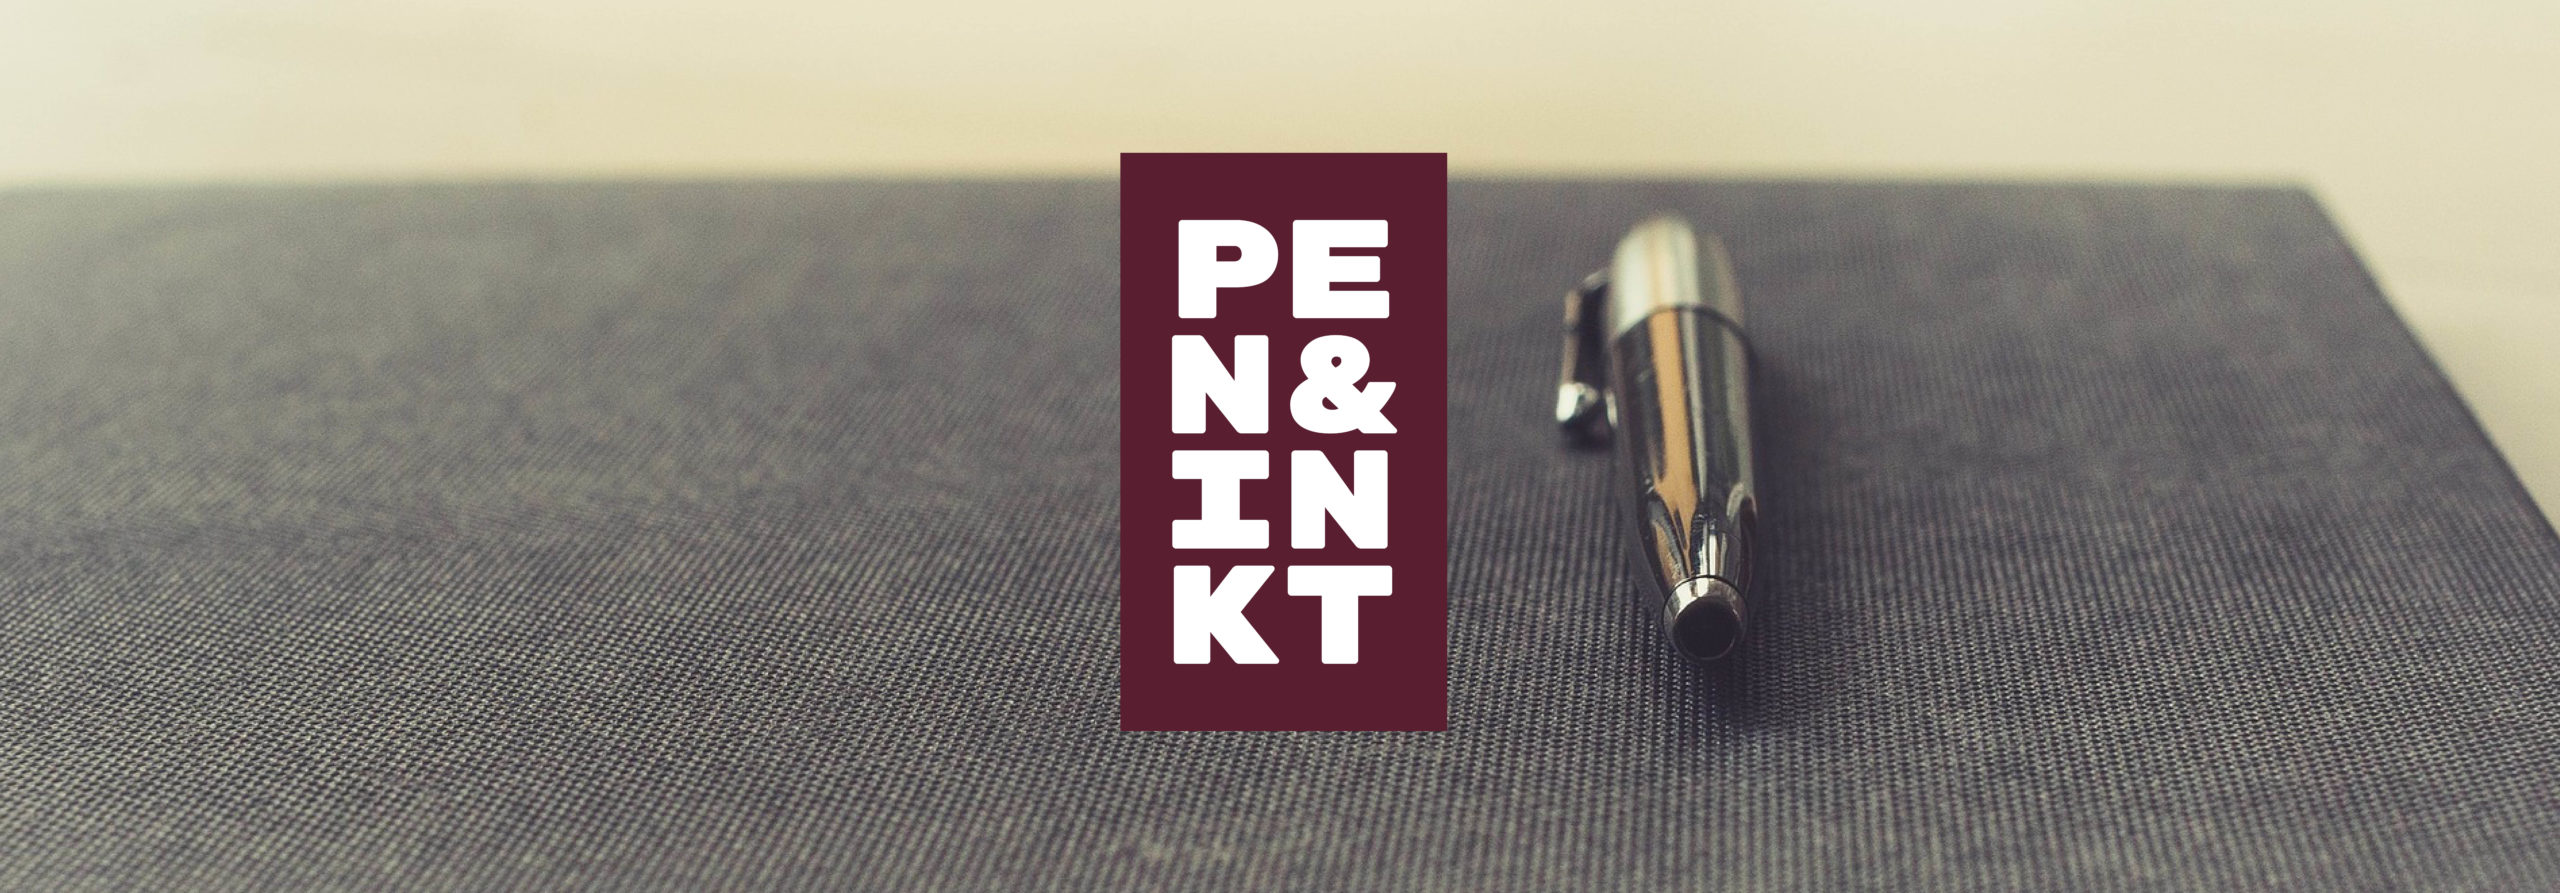 Pen & Inkt